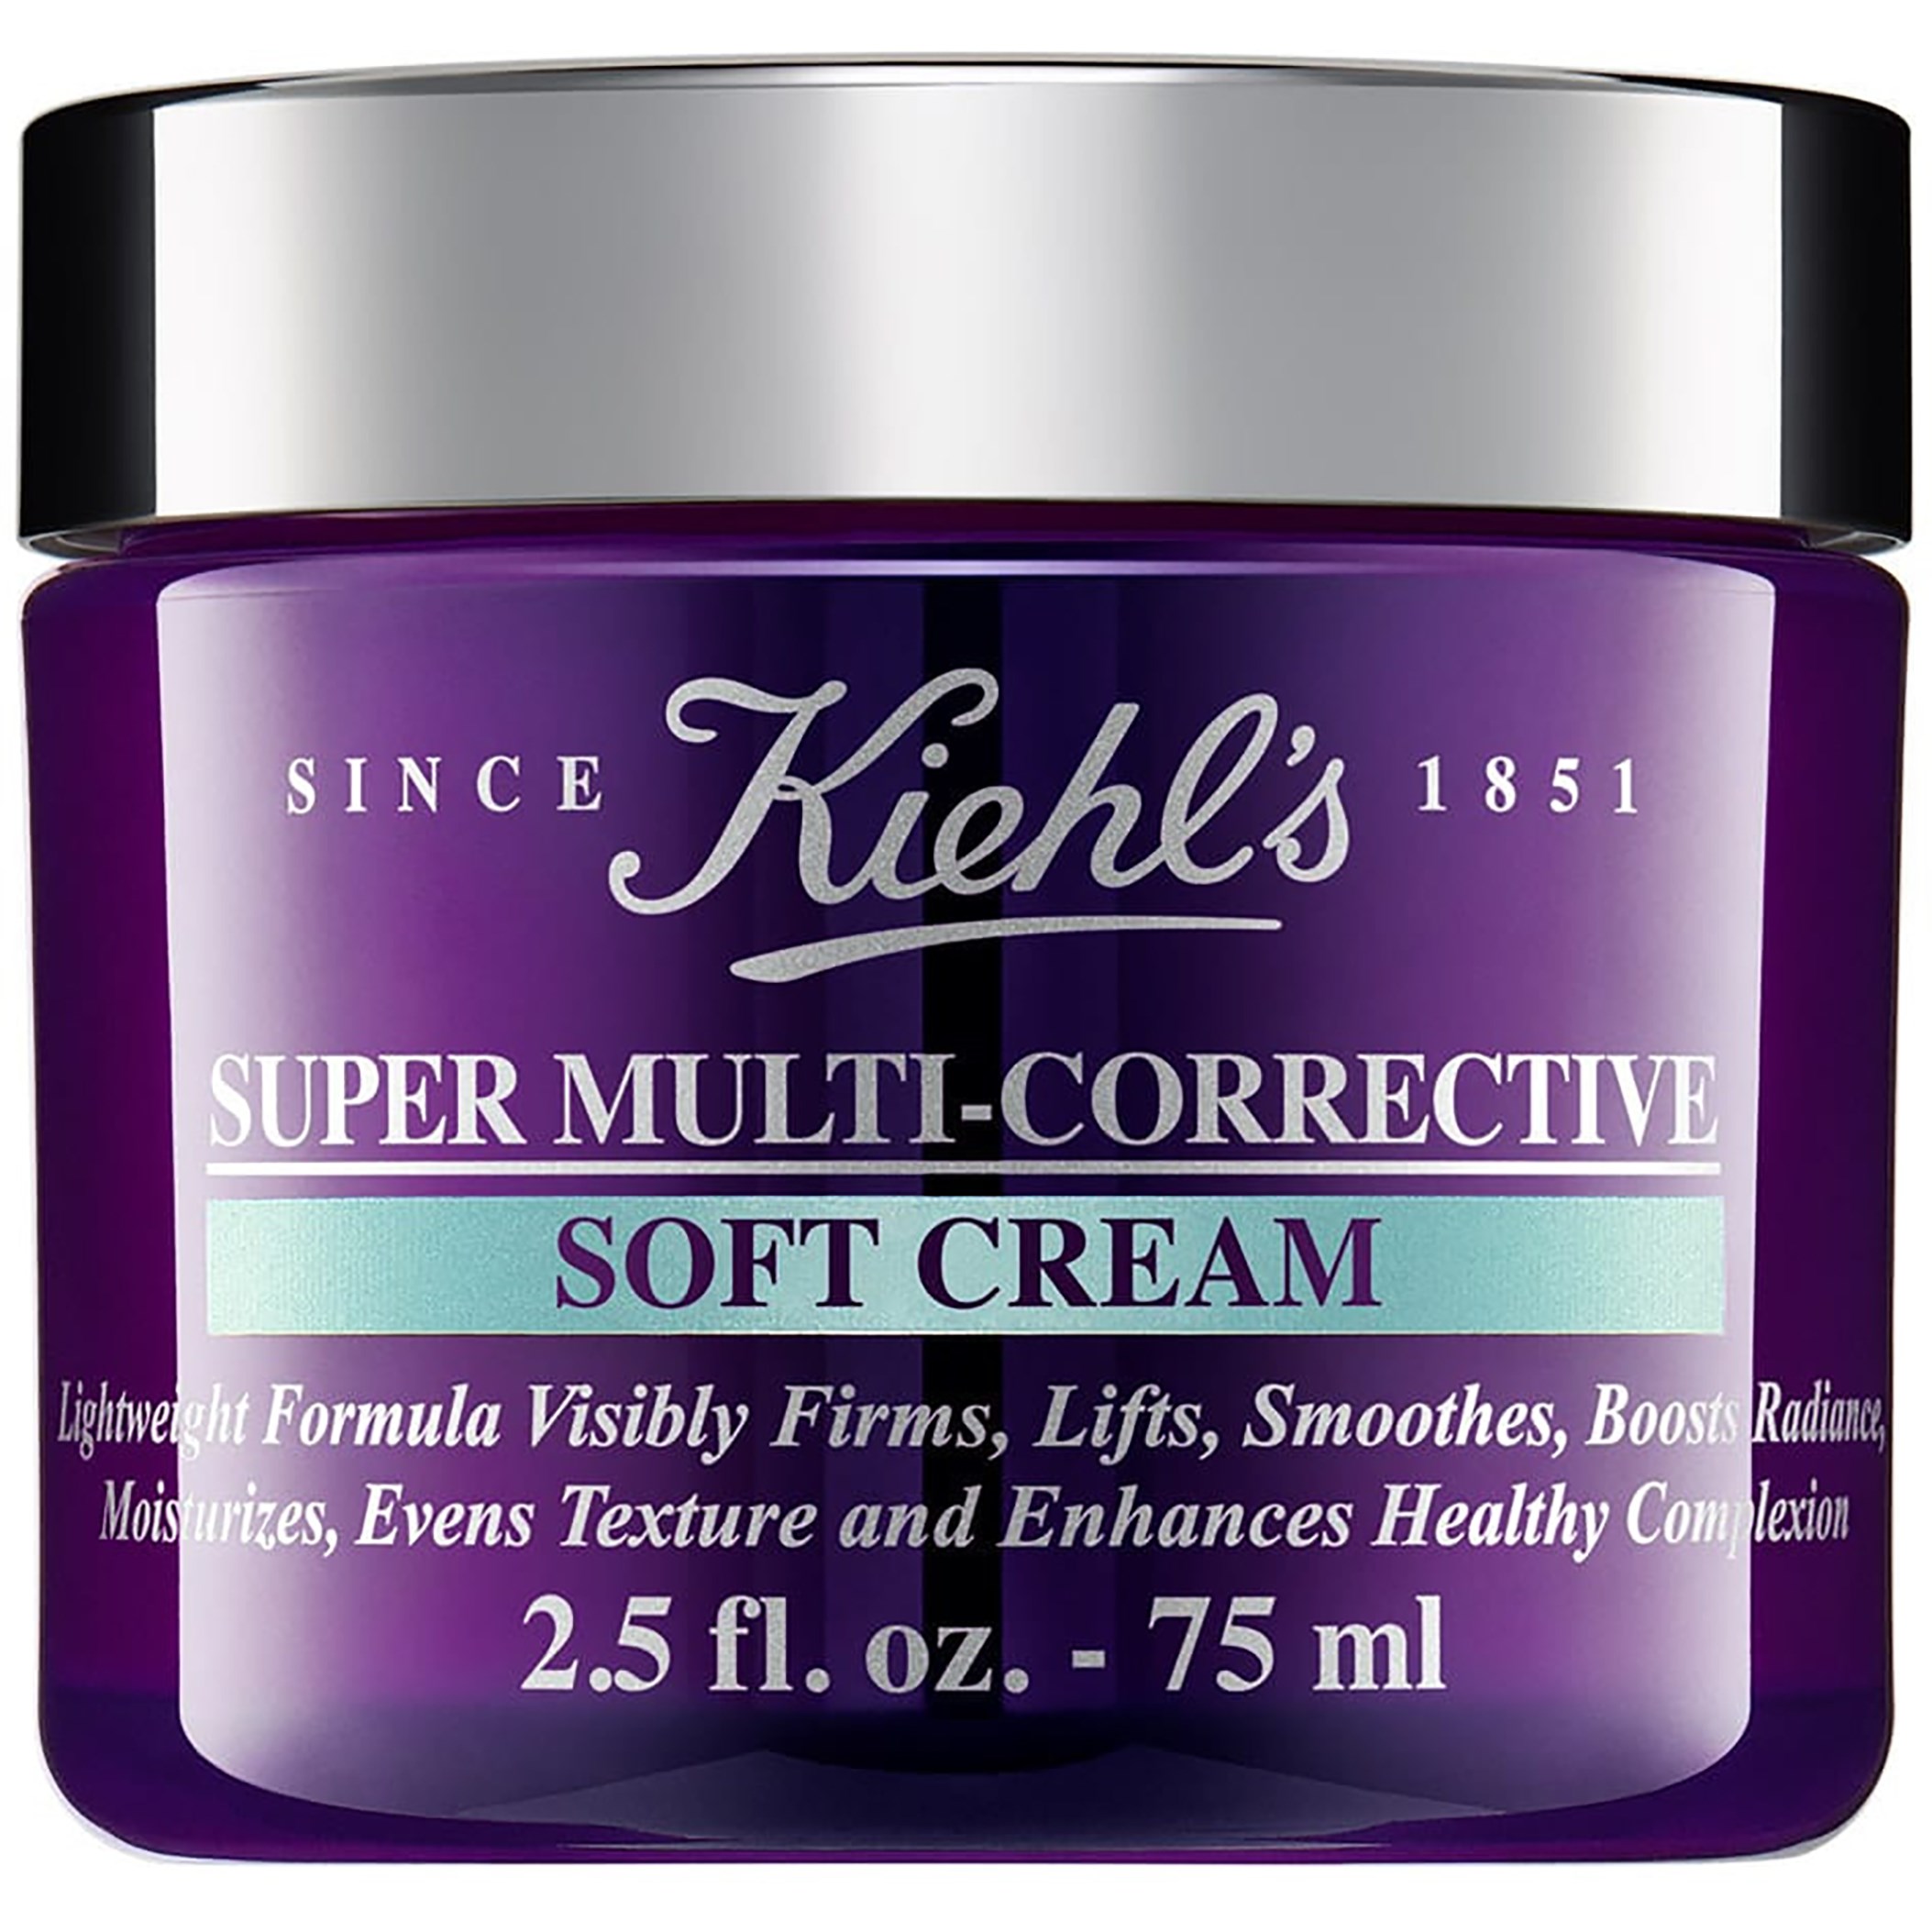 Kiehls Super Multi-Corrective Soft Cream 75 ml